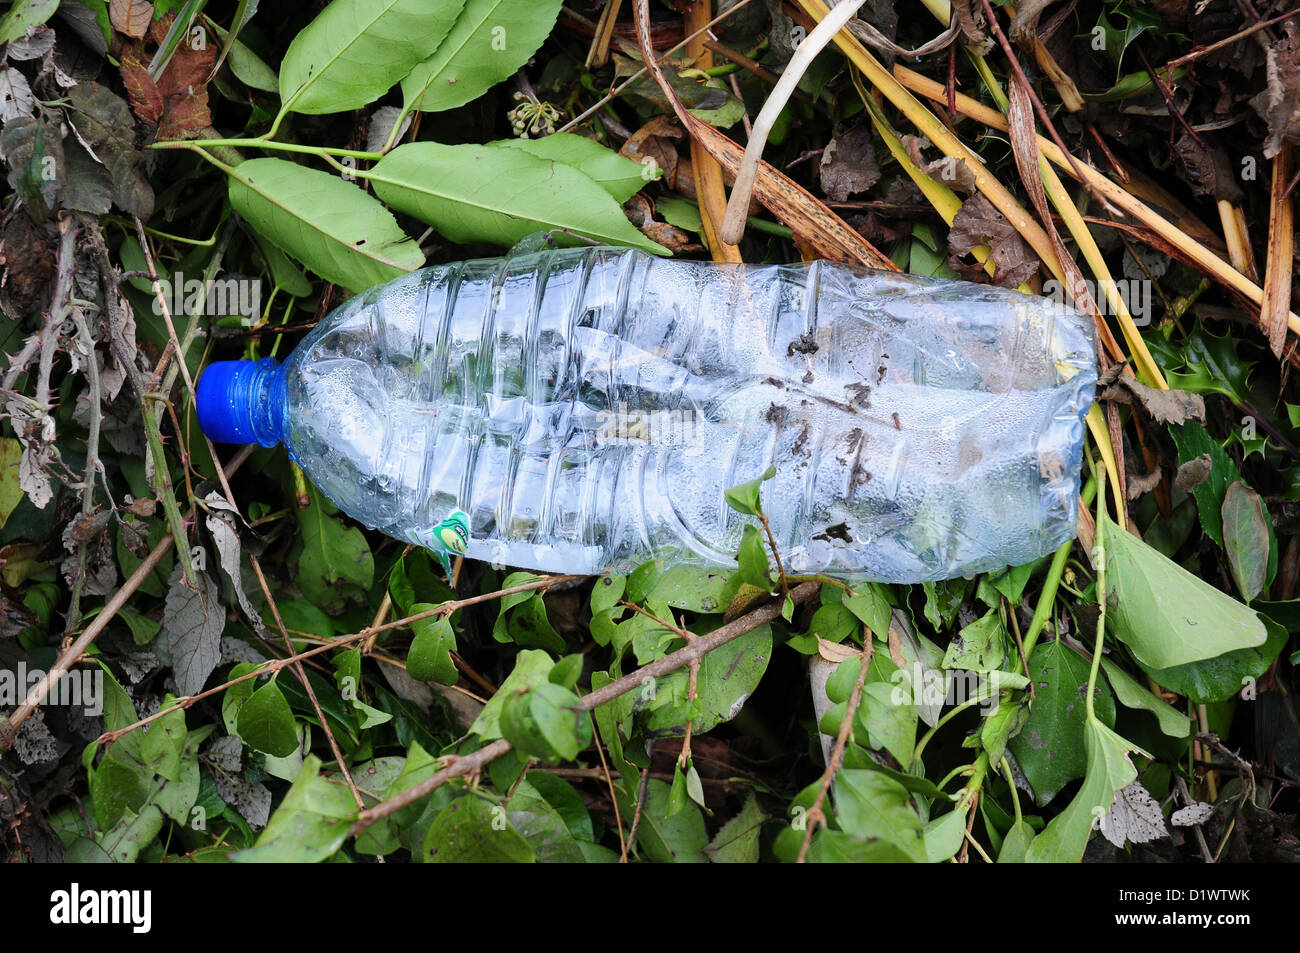 Botella de plástico tumbado en la cuneta banco. La contaminación. Foto de stock